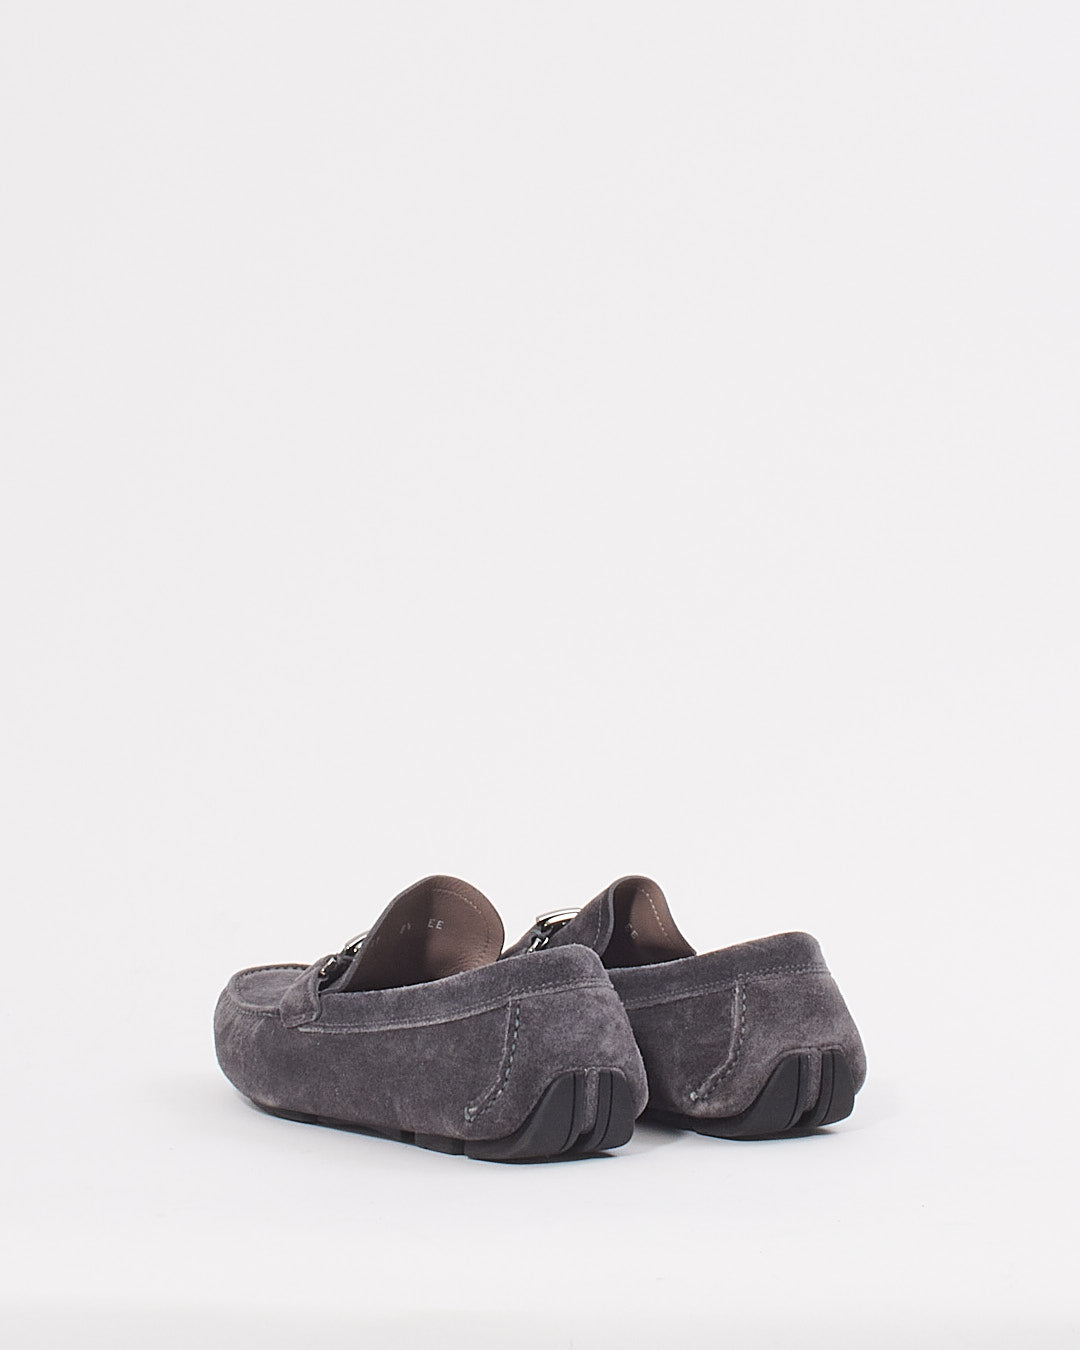 Ferragamo Grey Suede Men's Loafers - 8.5